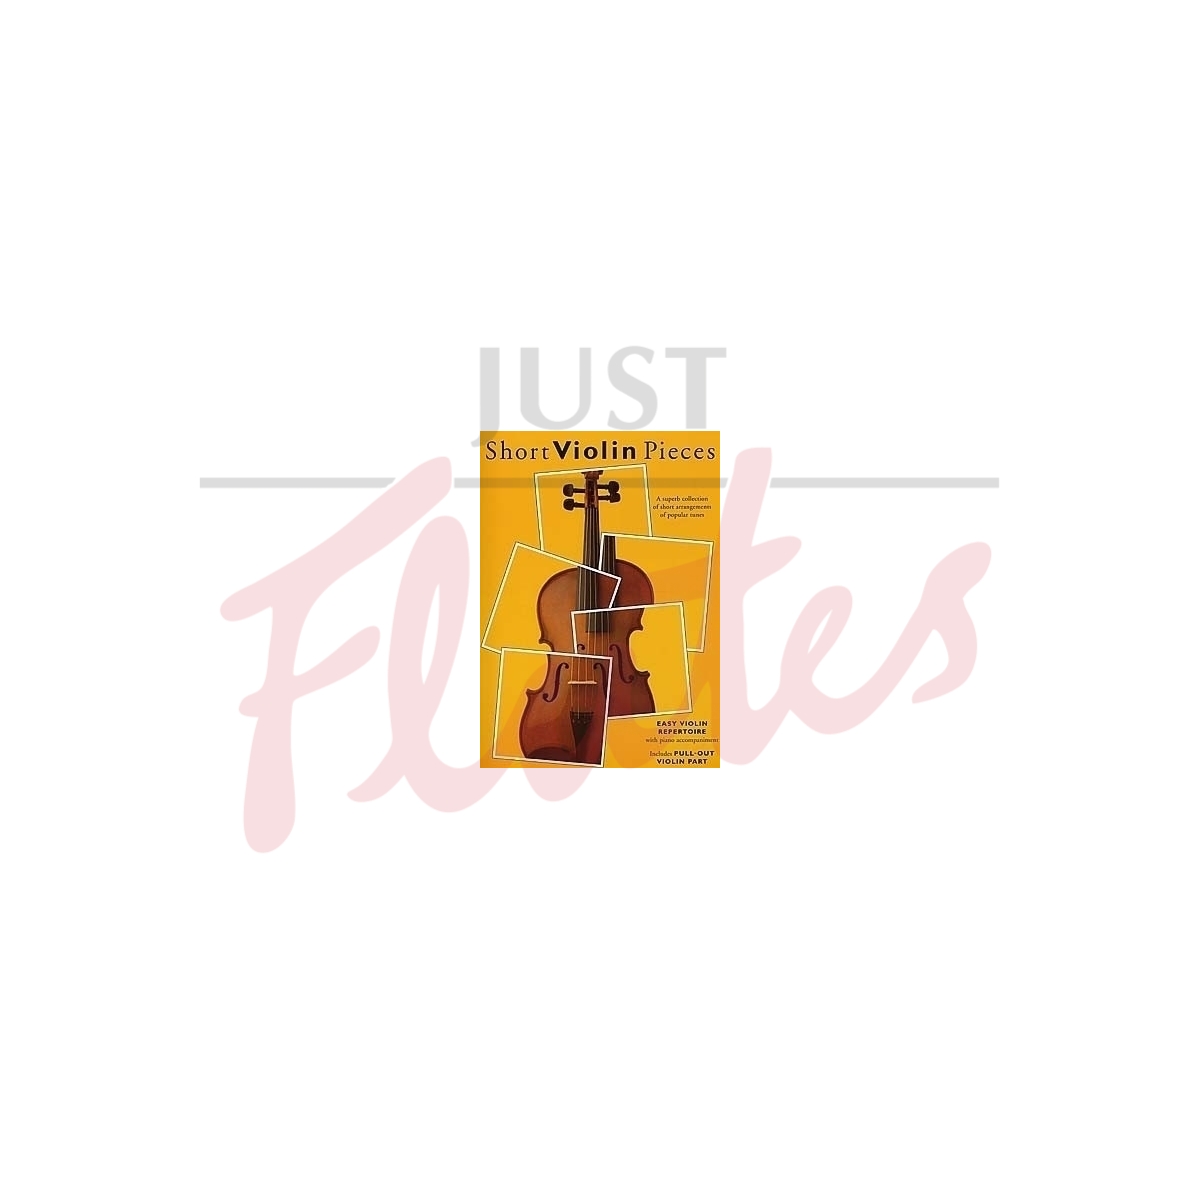 Short Violin Pieces